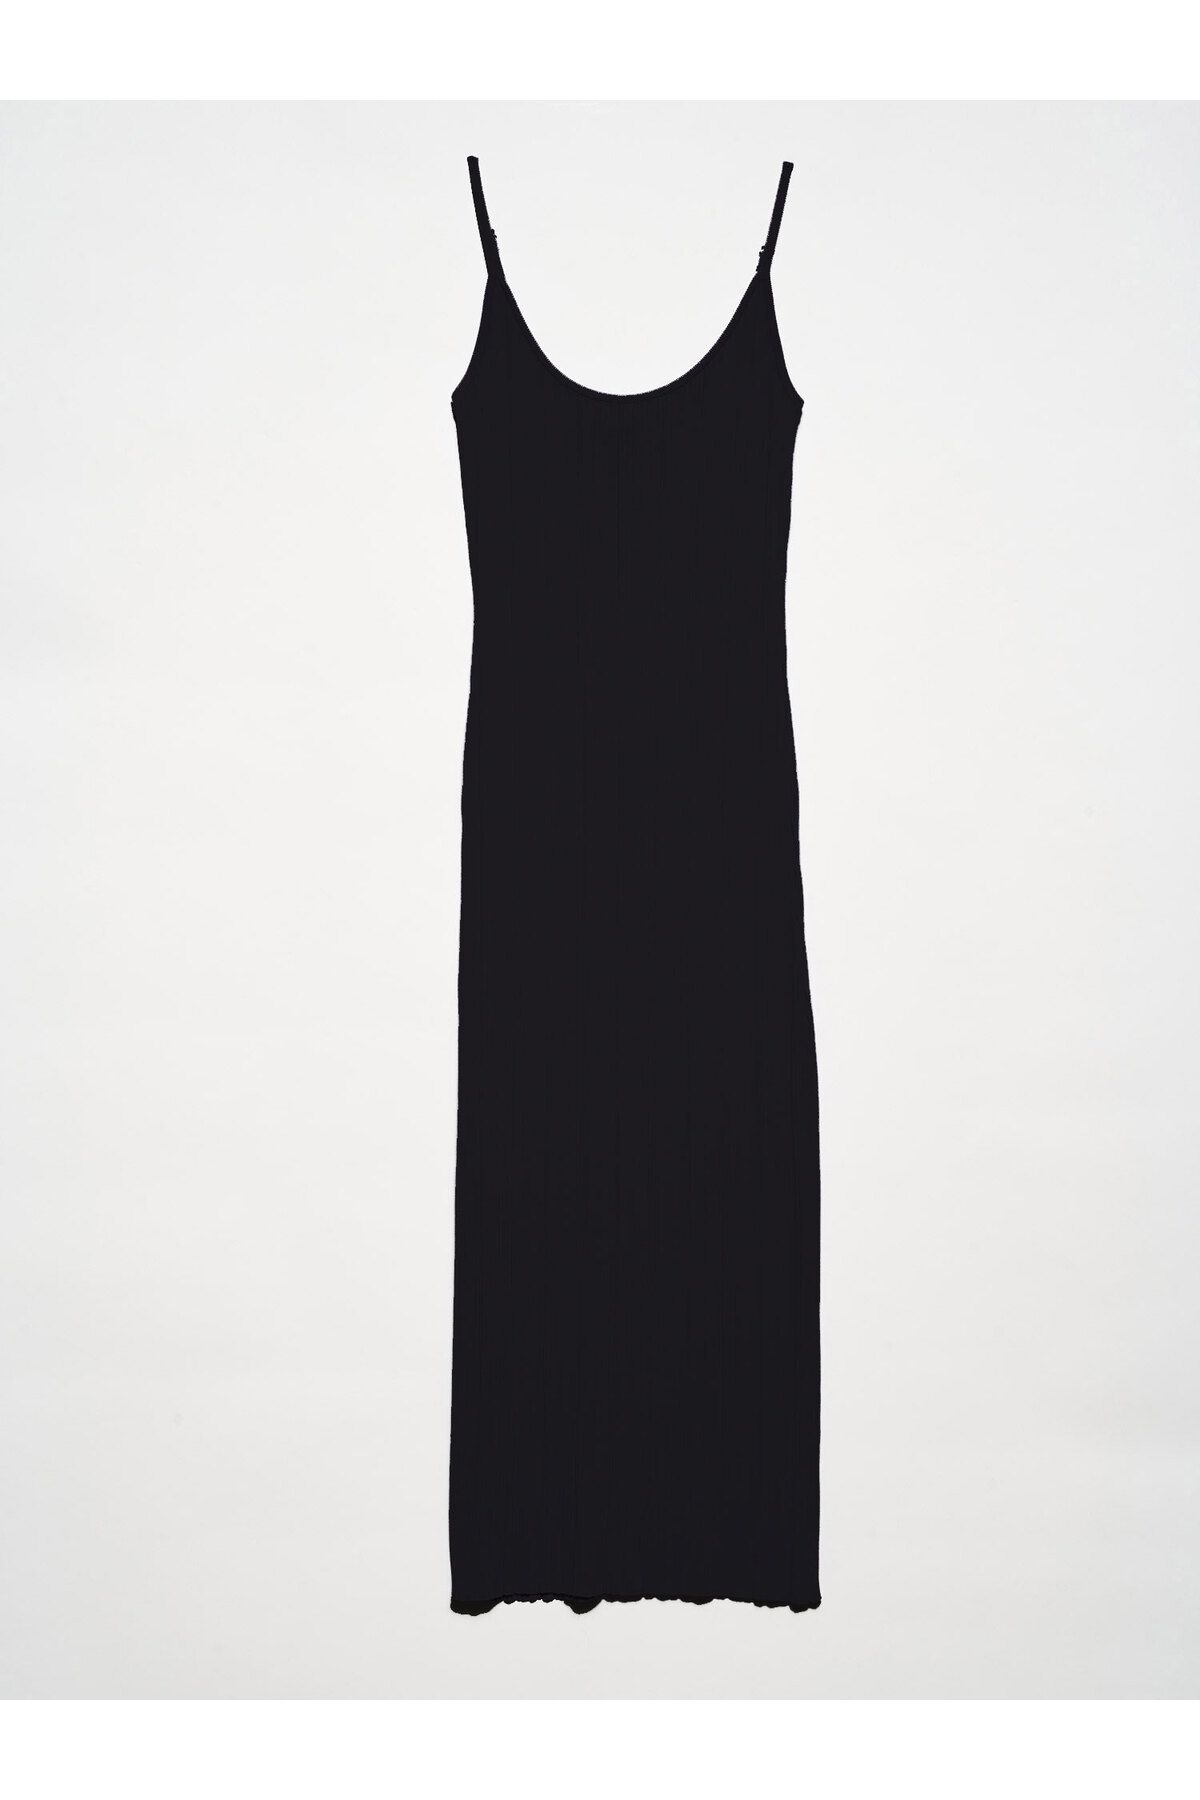 Dilvin 90139 Yırtmaçlı Askılı Triko Elbise-Siyah